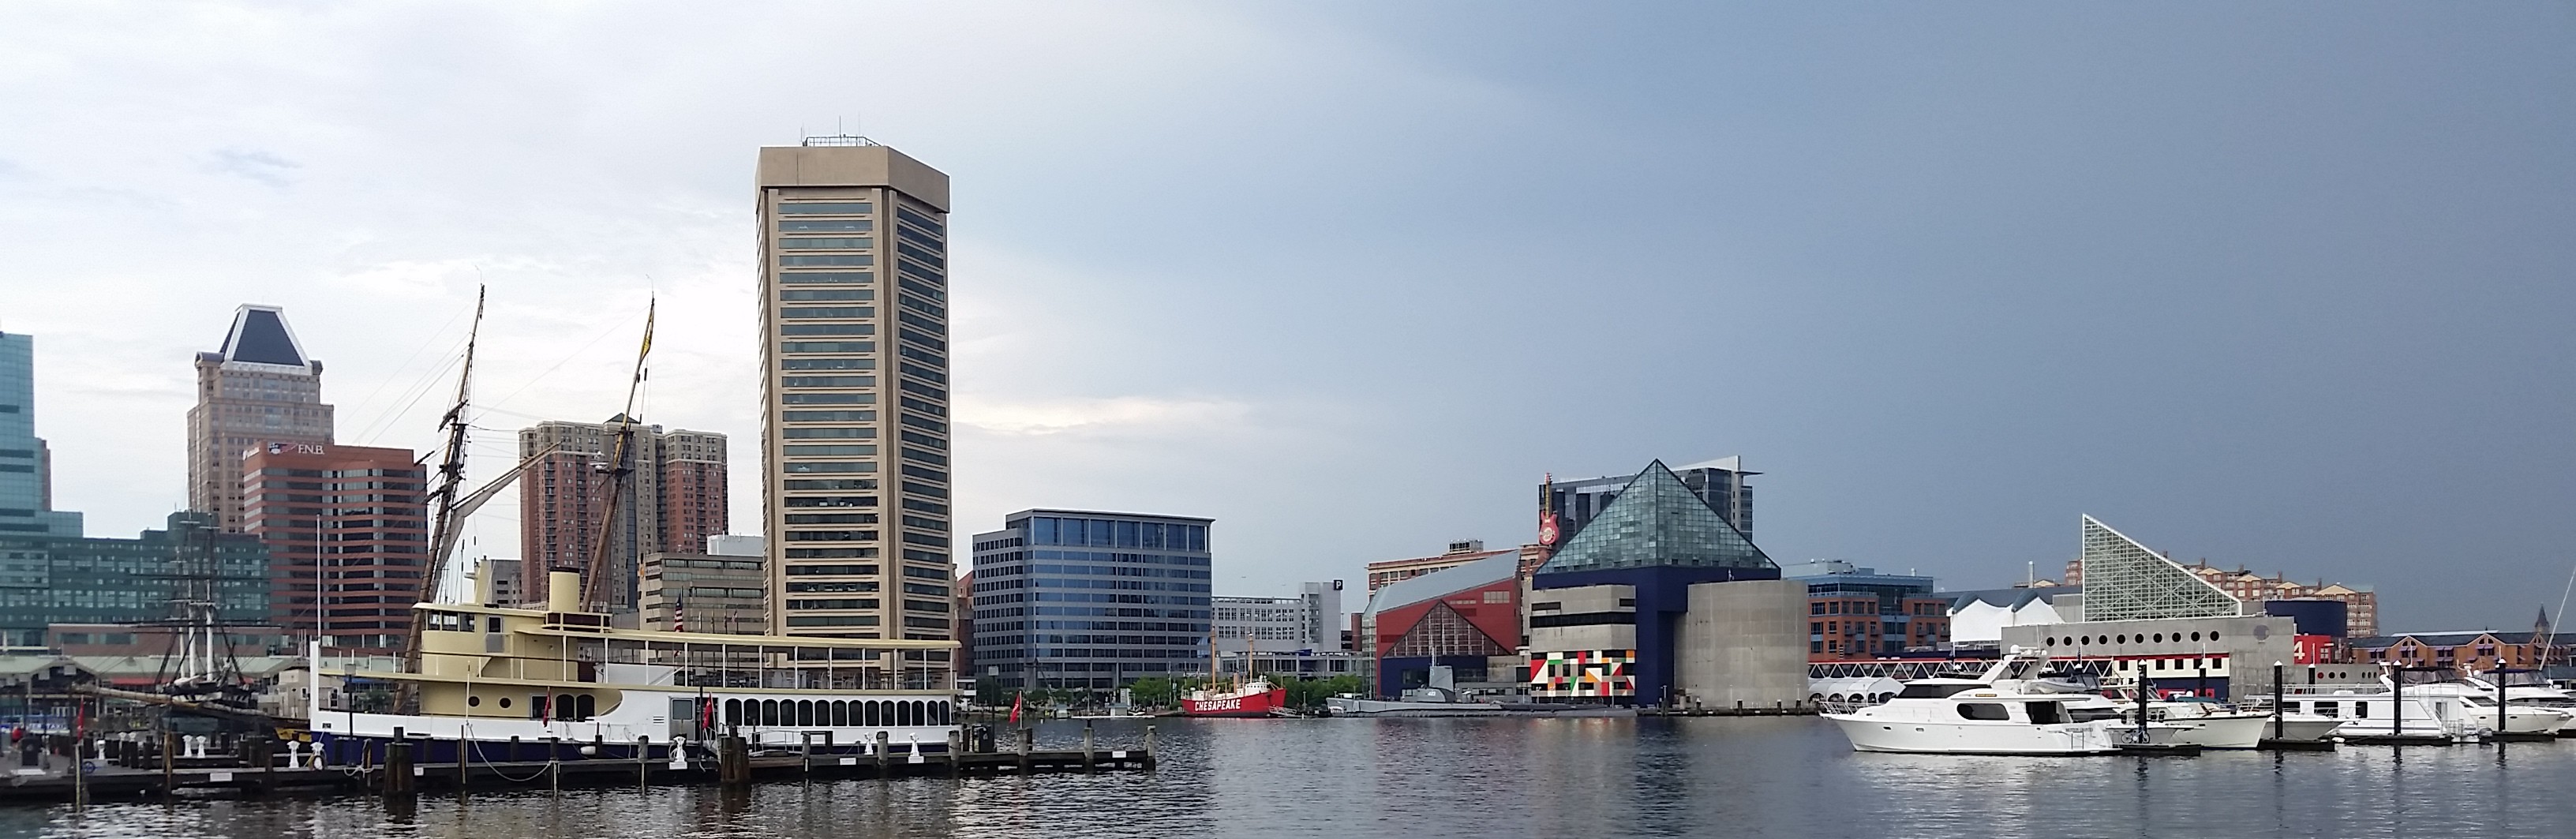 Baltimore City inner harbor